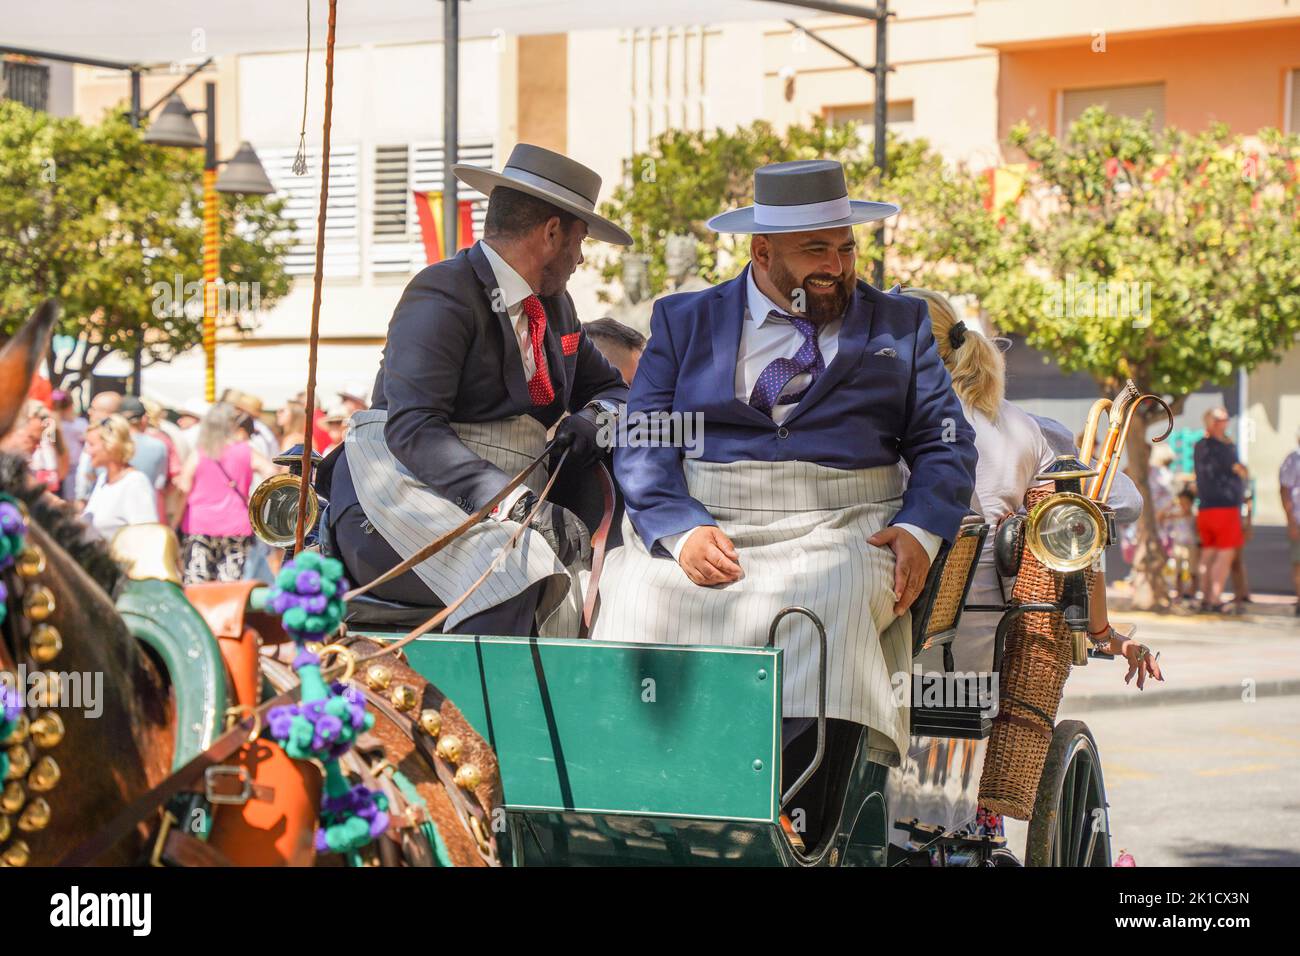 Zwei Kutscher in traditioneller spanischer Tracht, mit einer Pferdekutsche, jährlicher Pferdetag. Fuengirola, Andalusien, Costa del Sol, Spanien. Stockfoto